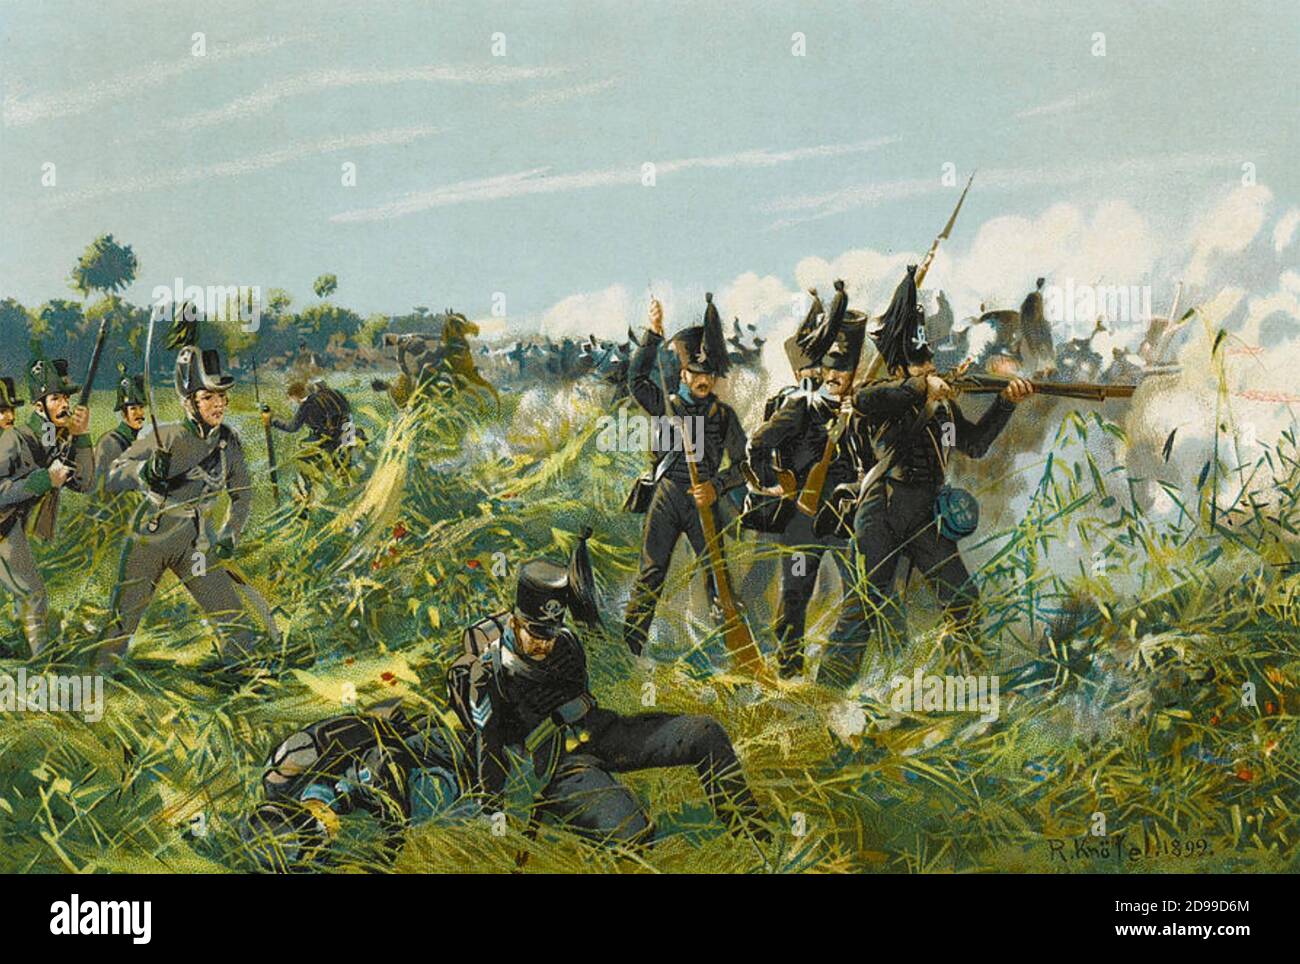 BATTAGLIA DI QUATRE BRAS 16 GIUGNO 1815. Un preliminare alla battaglia principale di Waterloo due giorni dopo. Brunswick Fanteria avanzando in una litografia del 1899 dell'artista tedesco Richard Knötel Foto Stock